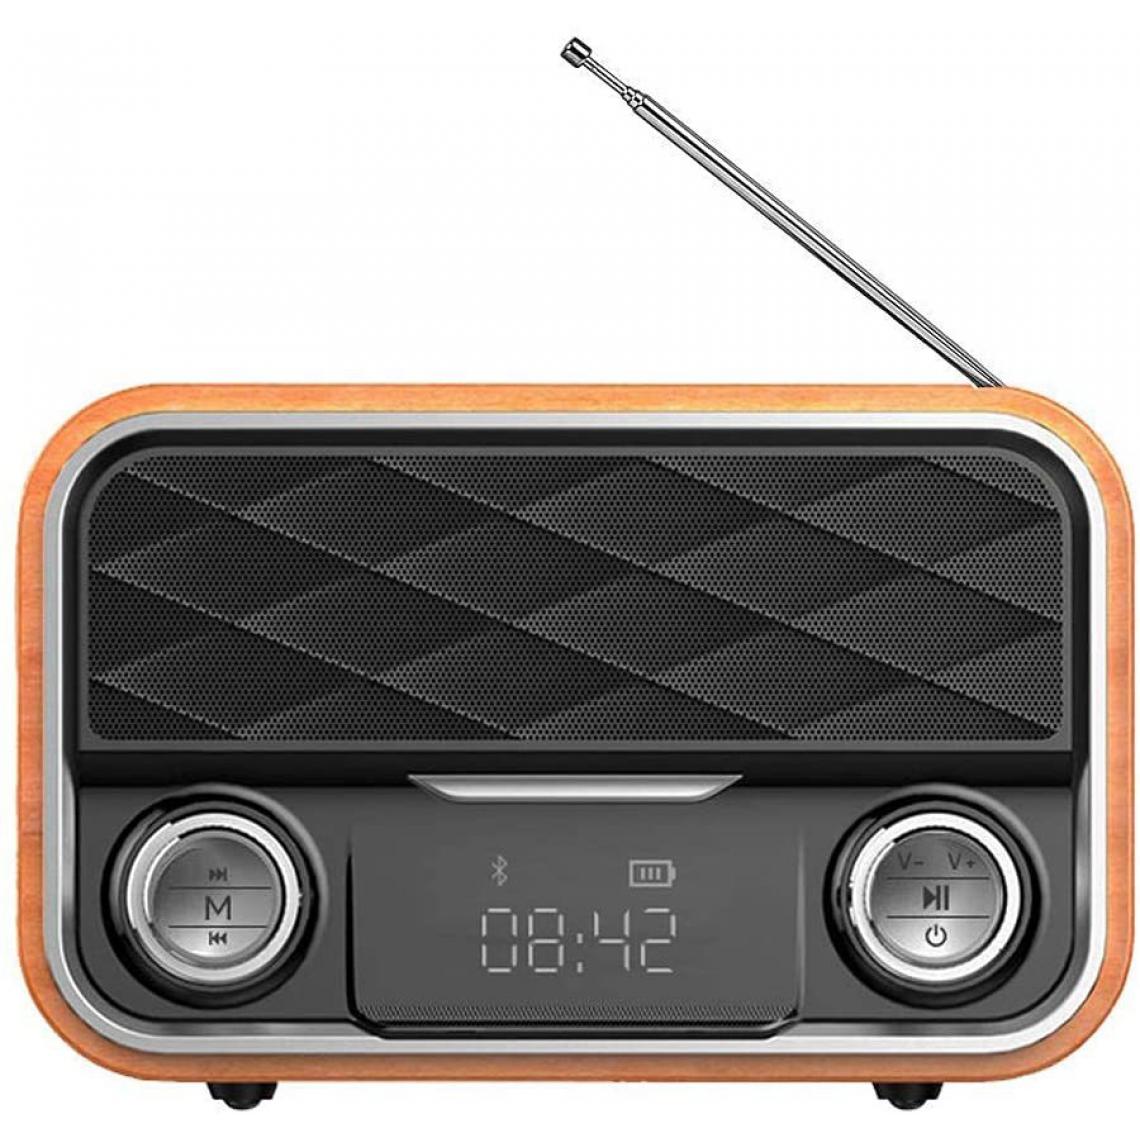 Chrono - Radio rétro Bluetooth avec AUX/FM, radio d'urgence avec antenne, haut-parleur Bluetooth portable haut de gamme compatible avec les tablettes Android,Bois sombre - Enceintes Hifi